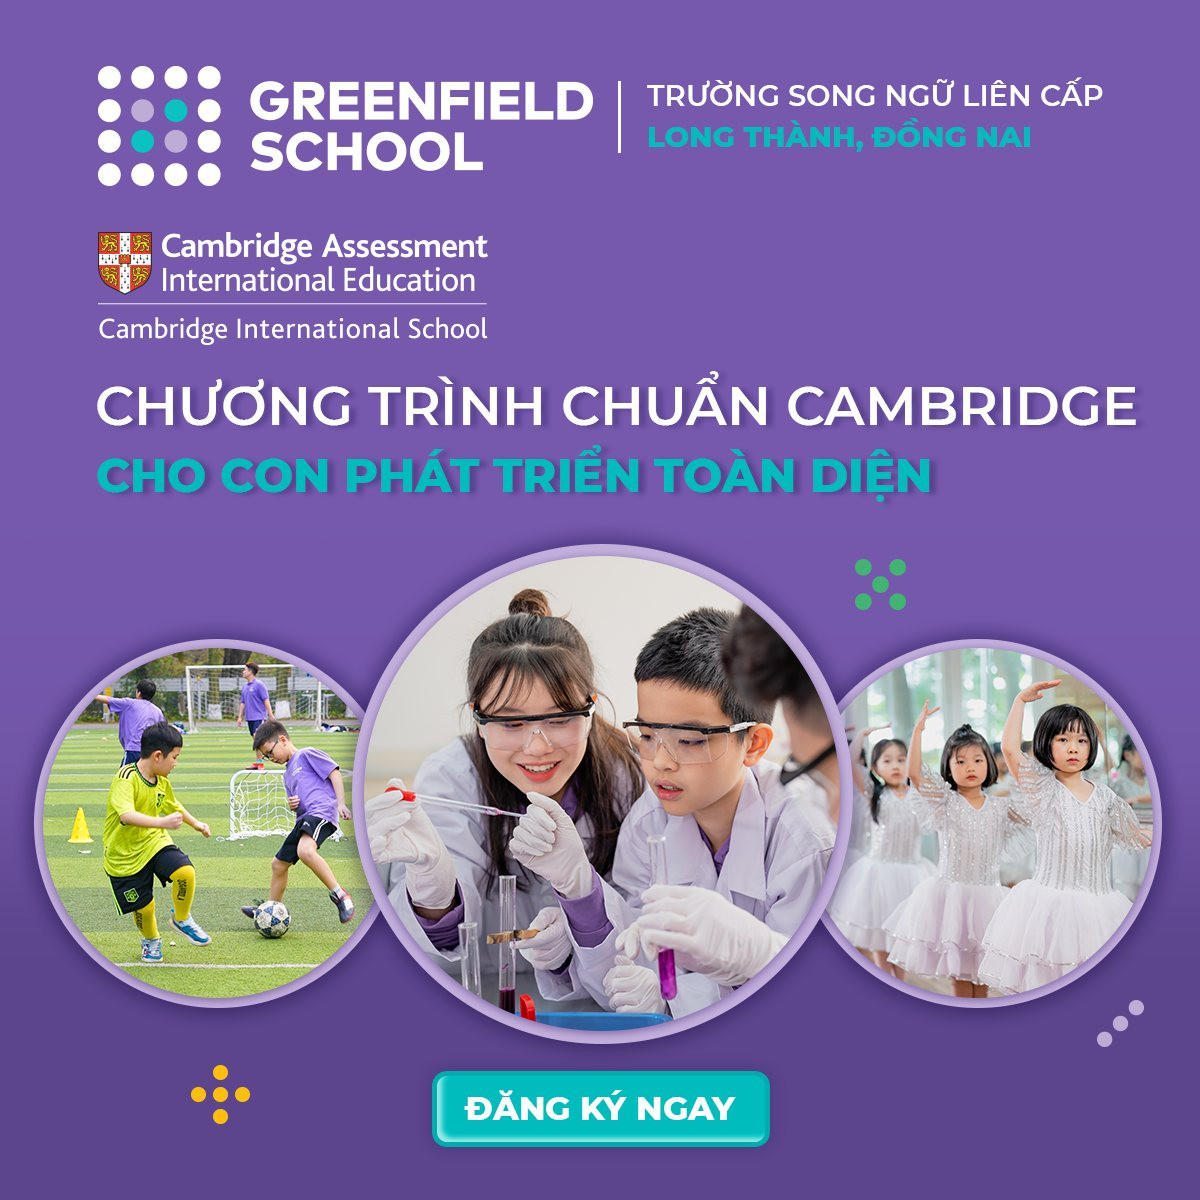 Greenfield School đem đến chương trình phổ thông chuẩn Cambridge, cho con phát triển toàn diện